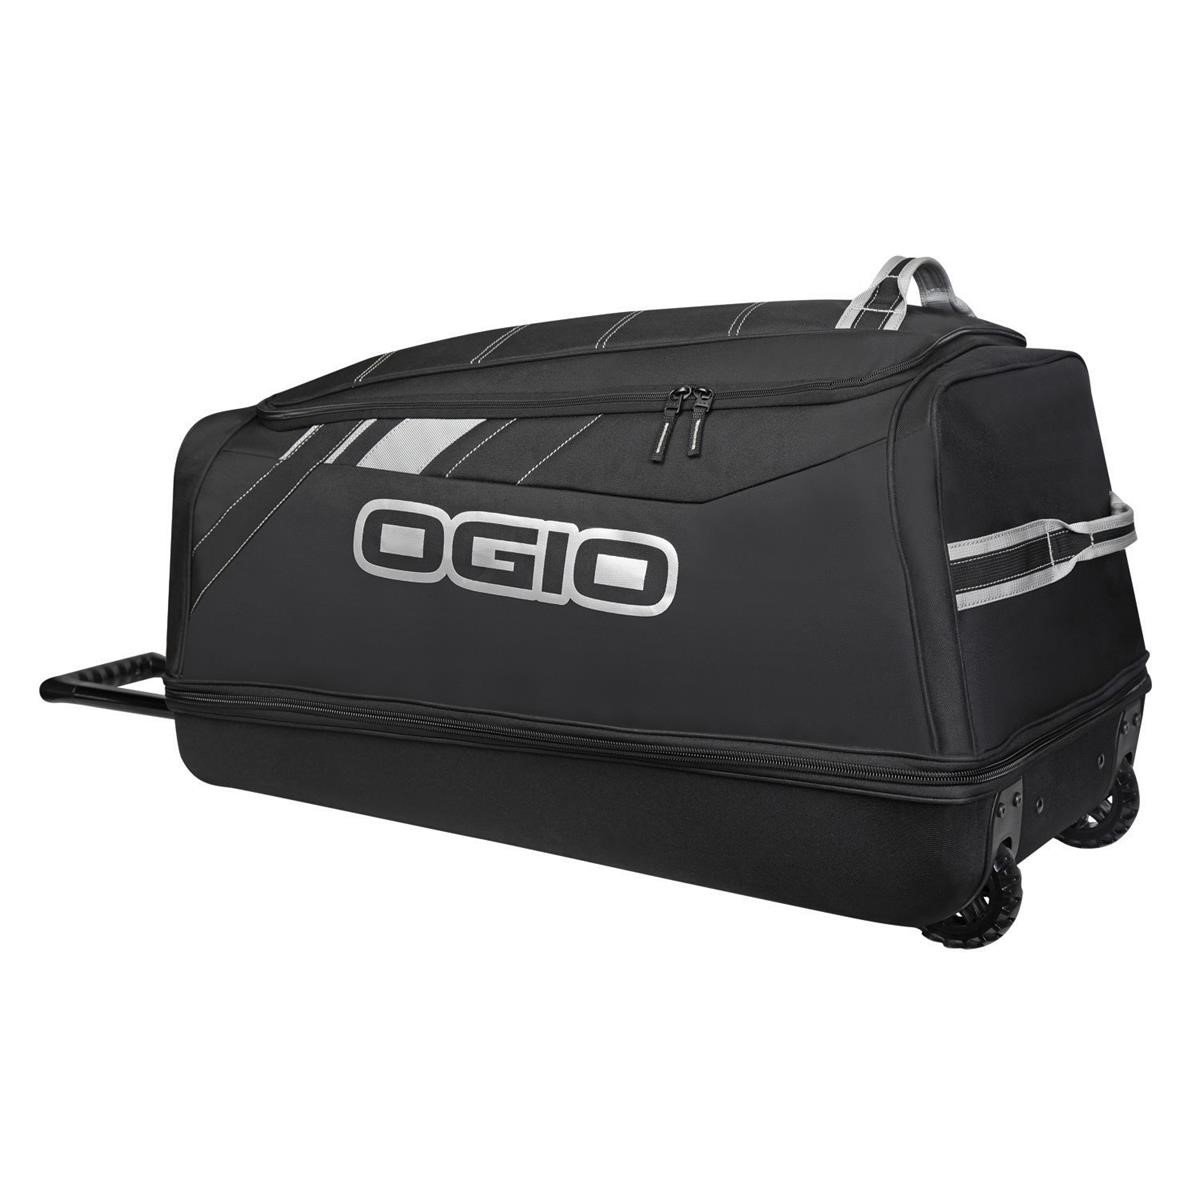 Ogio Travel Bag Shock Wheel Bag Stealth/Black, 114 Liter